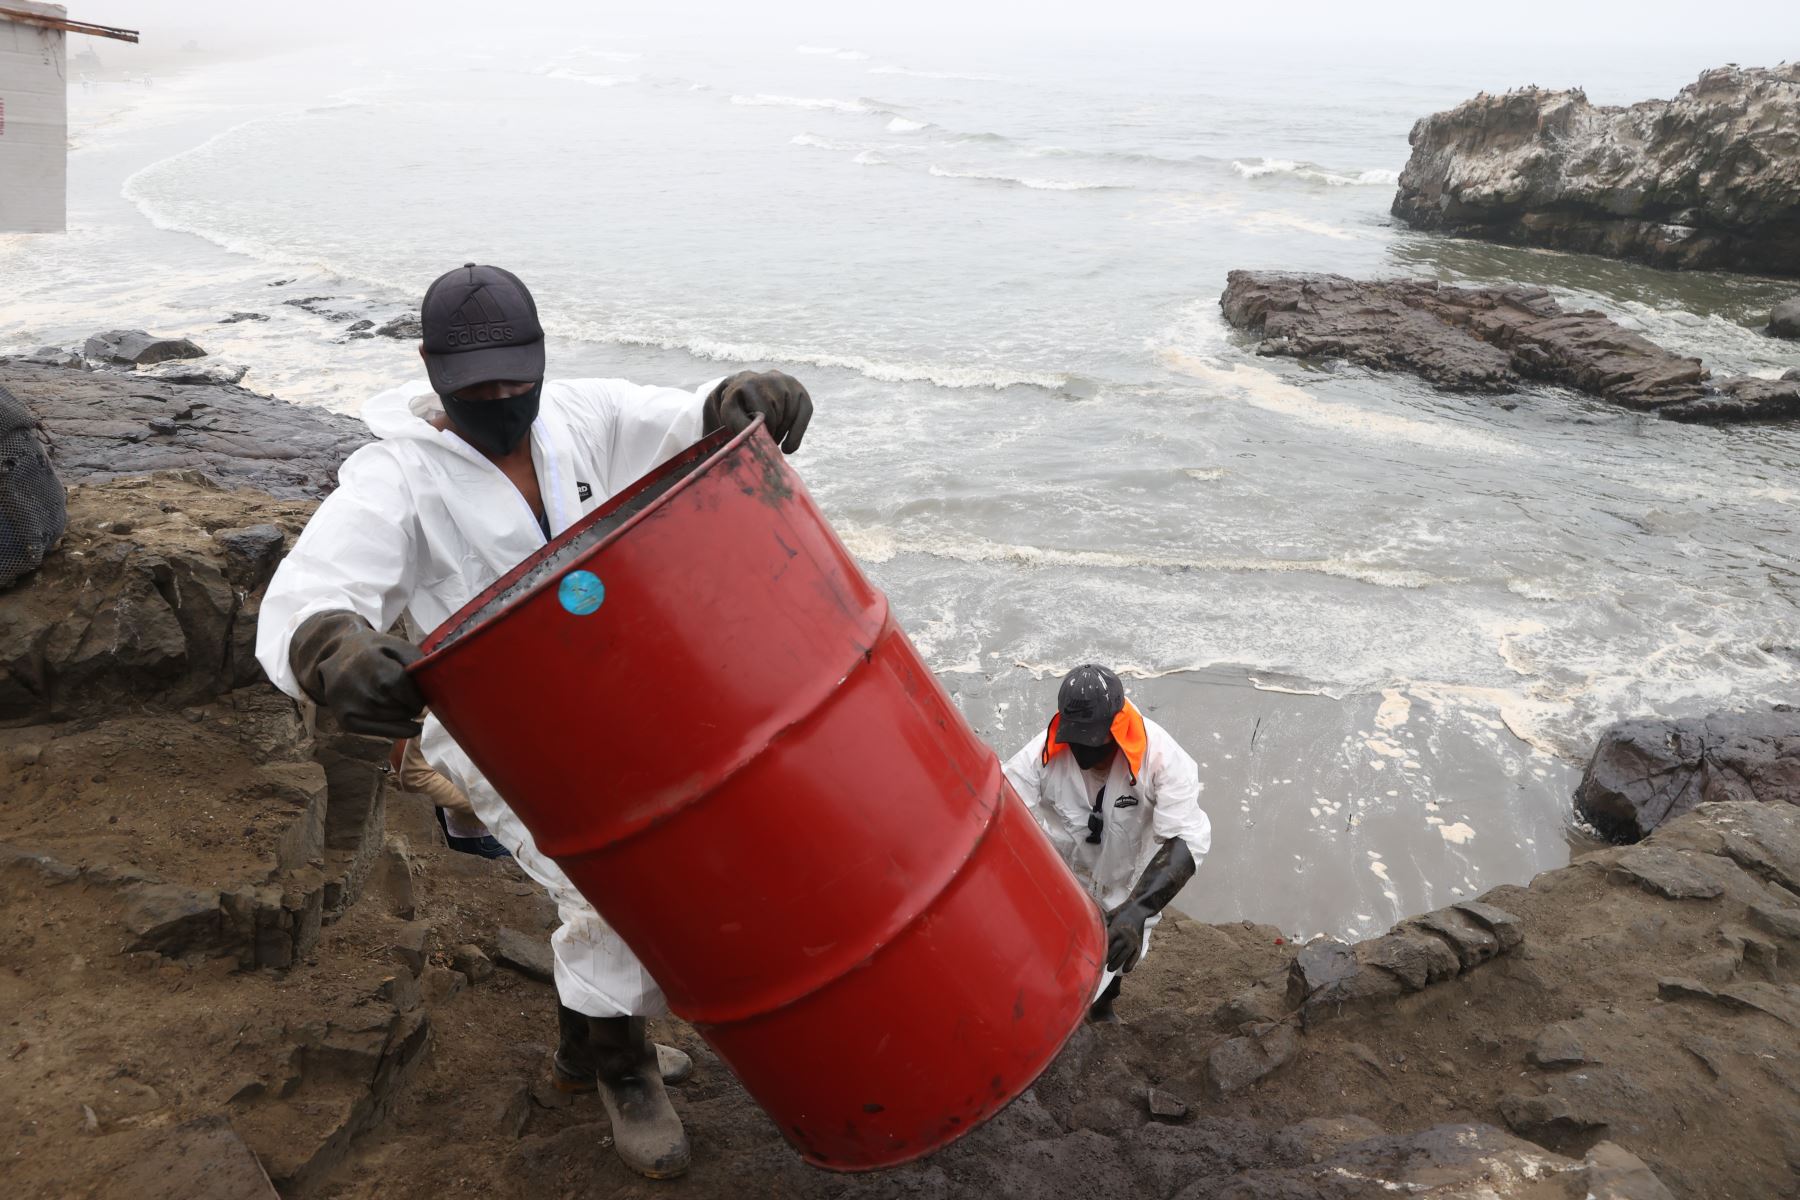 Continúan los trabajos de limpieza en la playa Cavero, ubicada en Ventanilla. Este lugar es uno de los más afectados por el derrame de petróleo ocasionado por la empresa Repsol y que causó un gran impacto ambiental. Foto: ANDINA/Vidal Tarqui